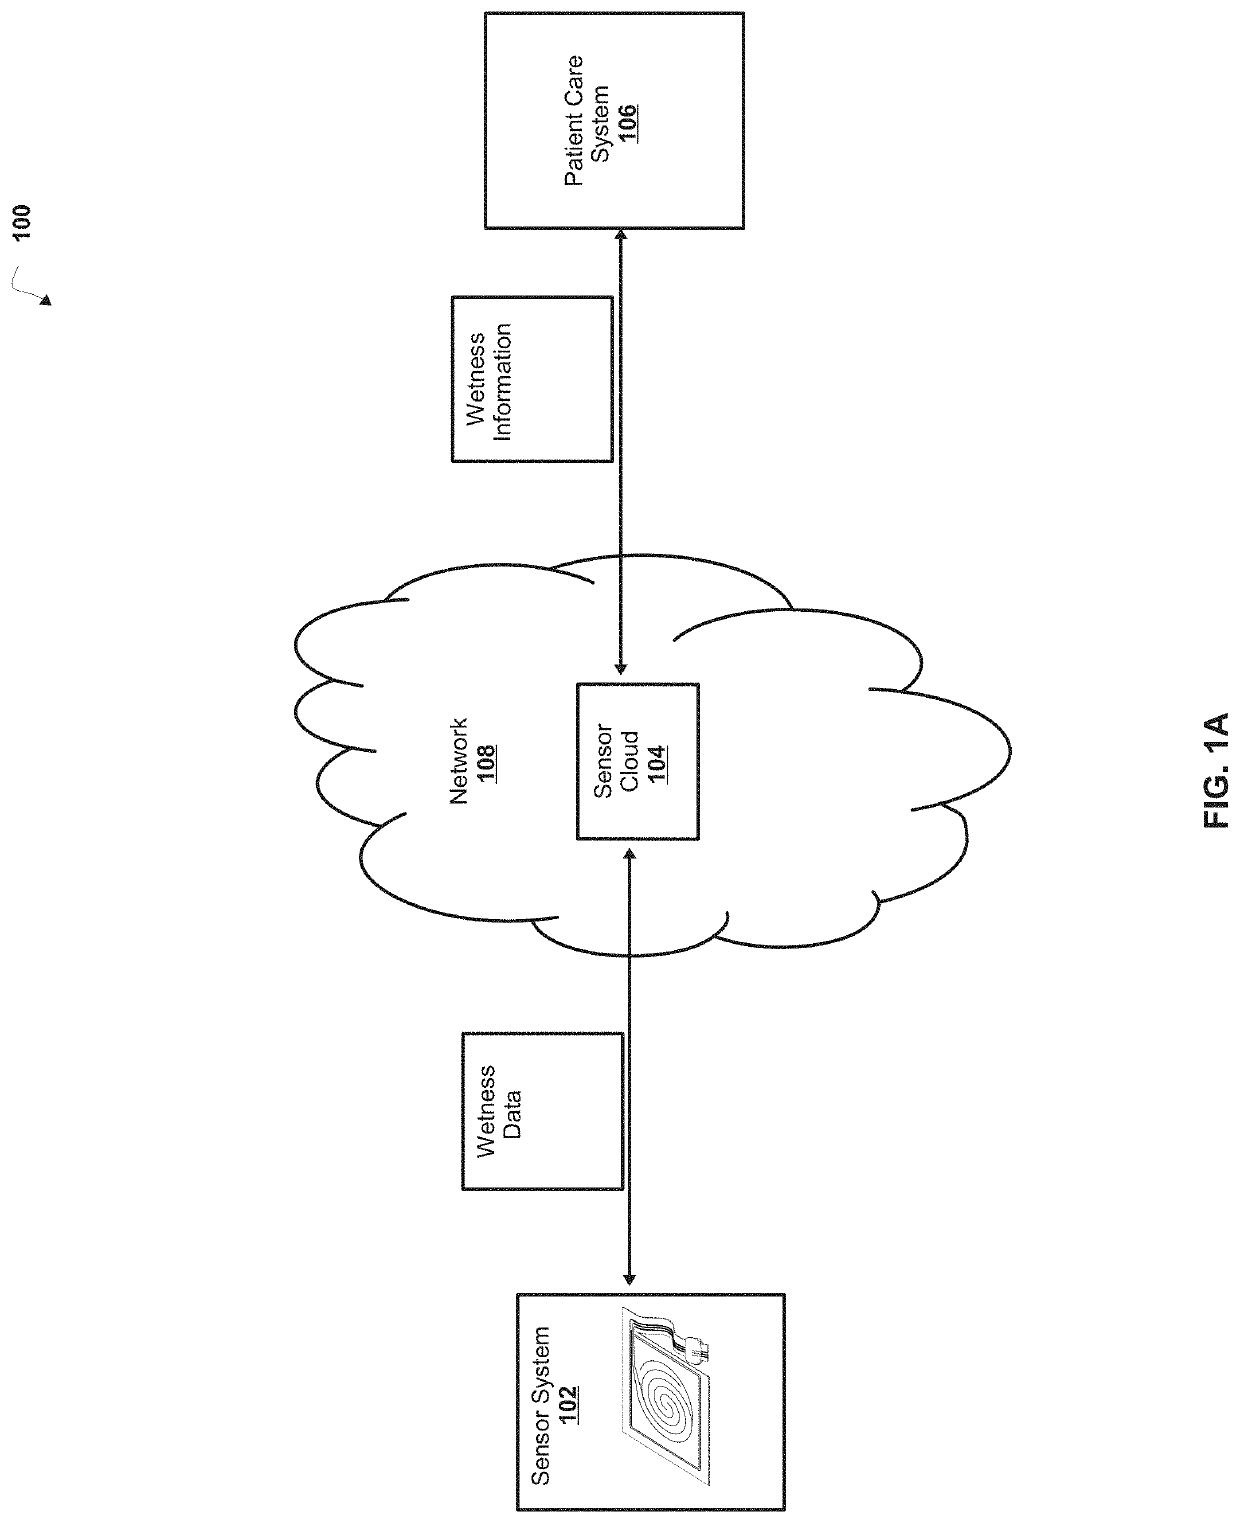 Sensor Cloud Architecture for Moisture Detection